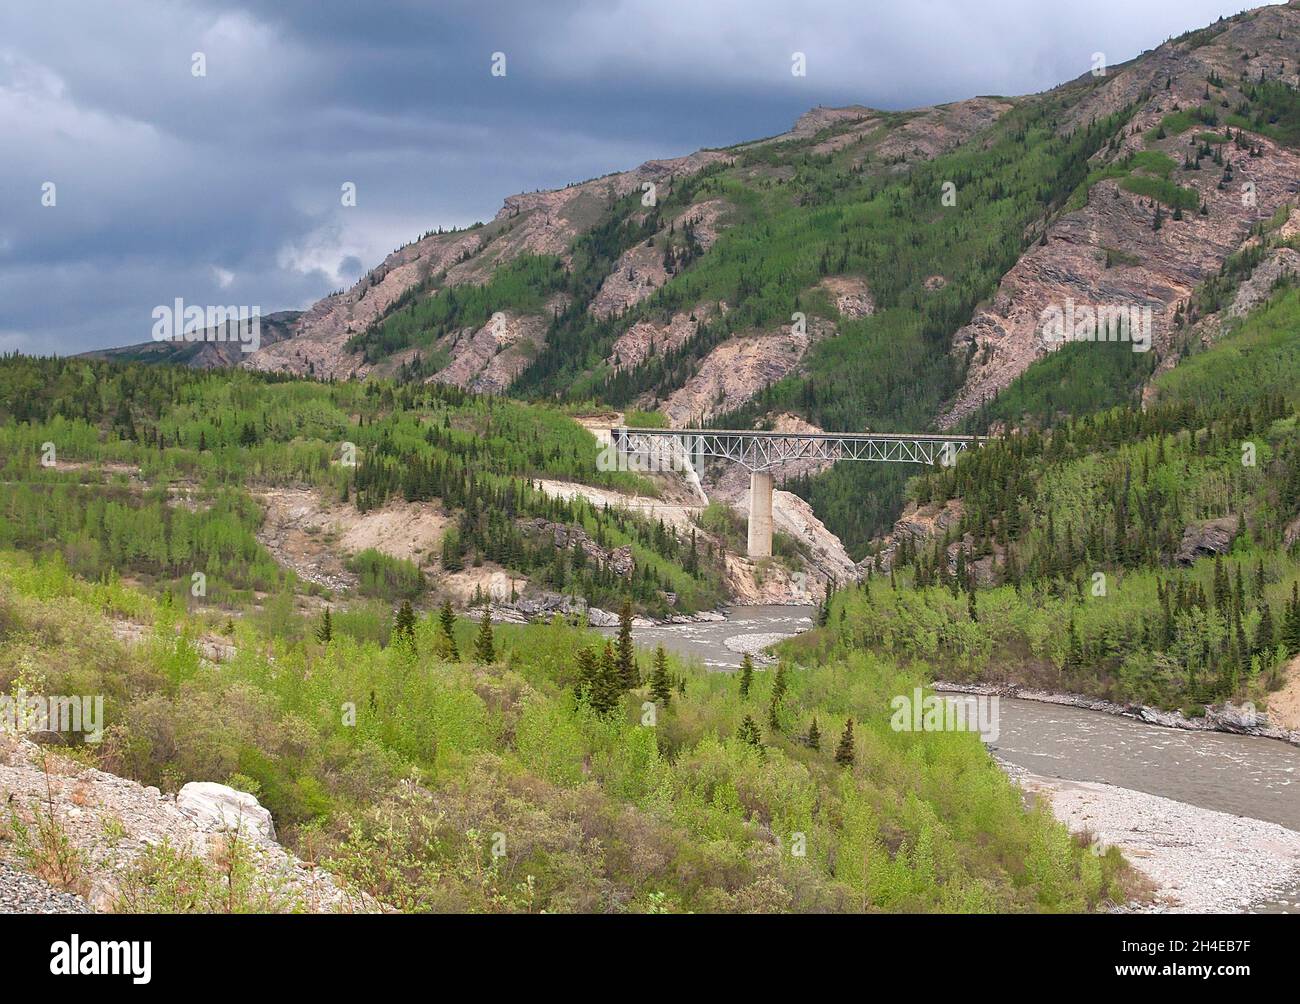 Bridge extending over river in Denali State Park, Alaska Stock Photo